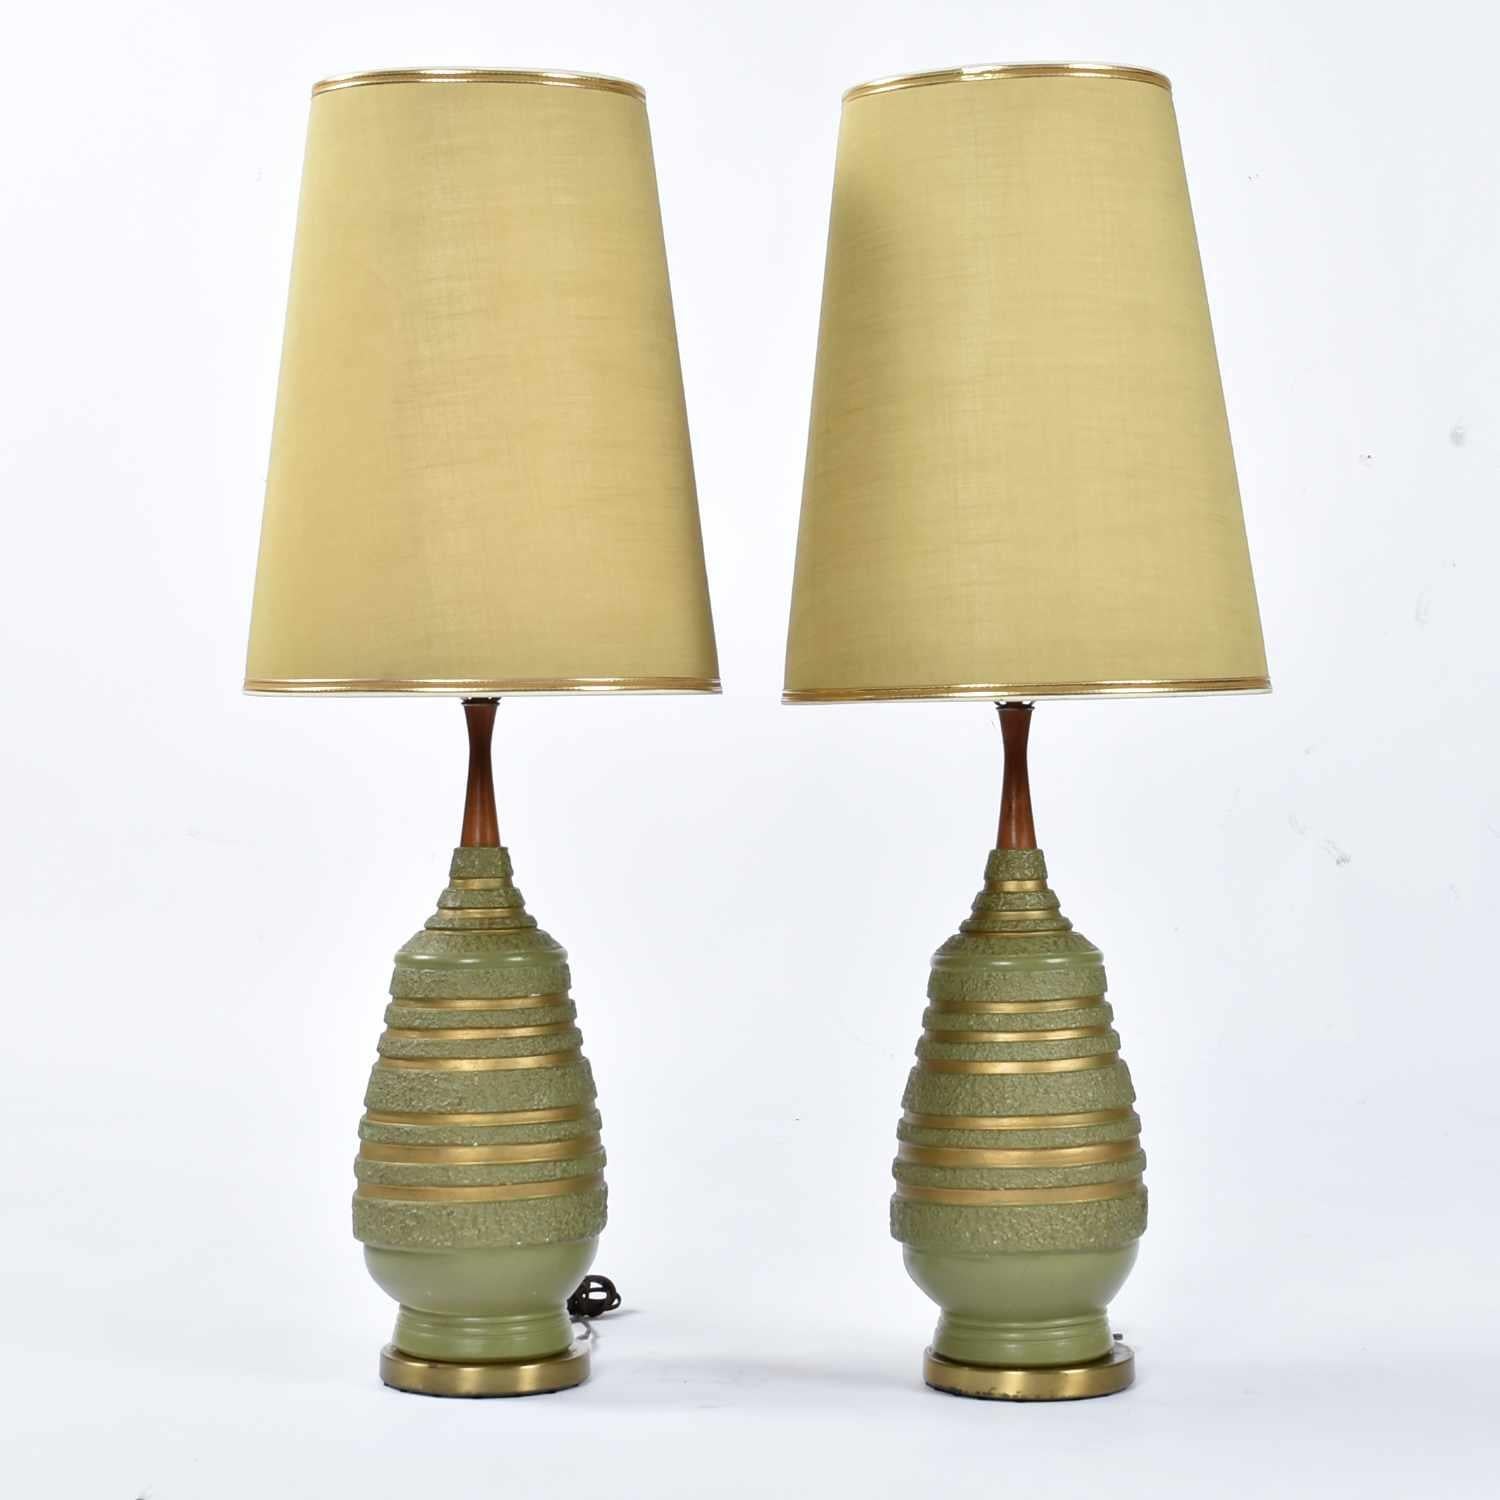 Incroyable paire complète de lampes vertes avacado de Plasto. Ces lampes doivent être parmi les plus authentiques du Mid-Century. Il est assez rare de trouver des lampes avec leur abat-jour d'origine. Ces abat-jours verts et coniques s'accordent